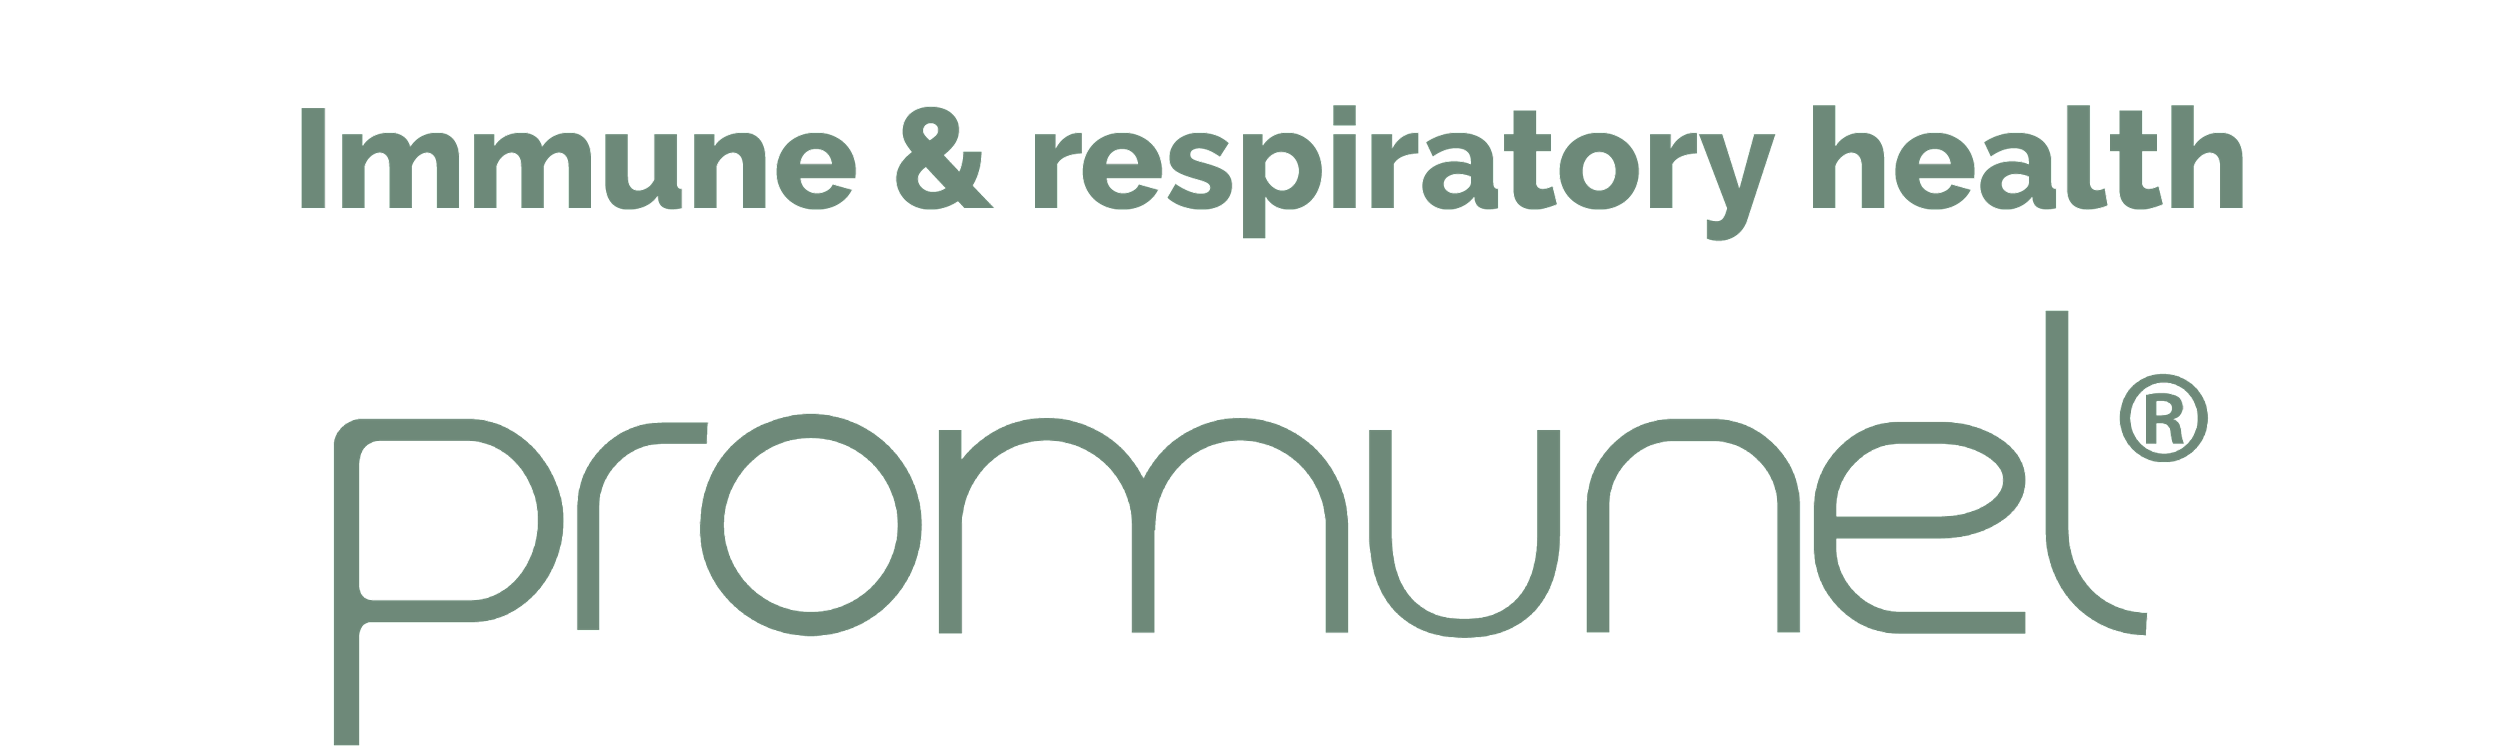 Immune & respiratory health